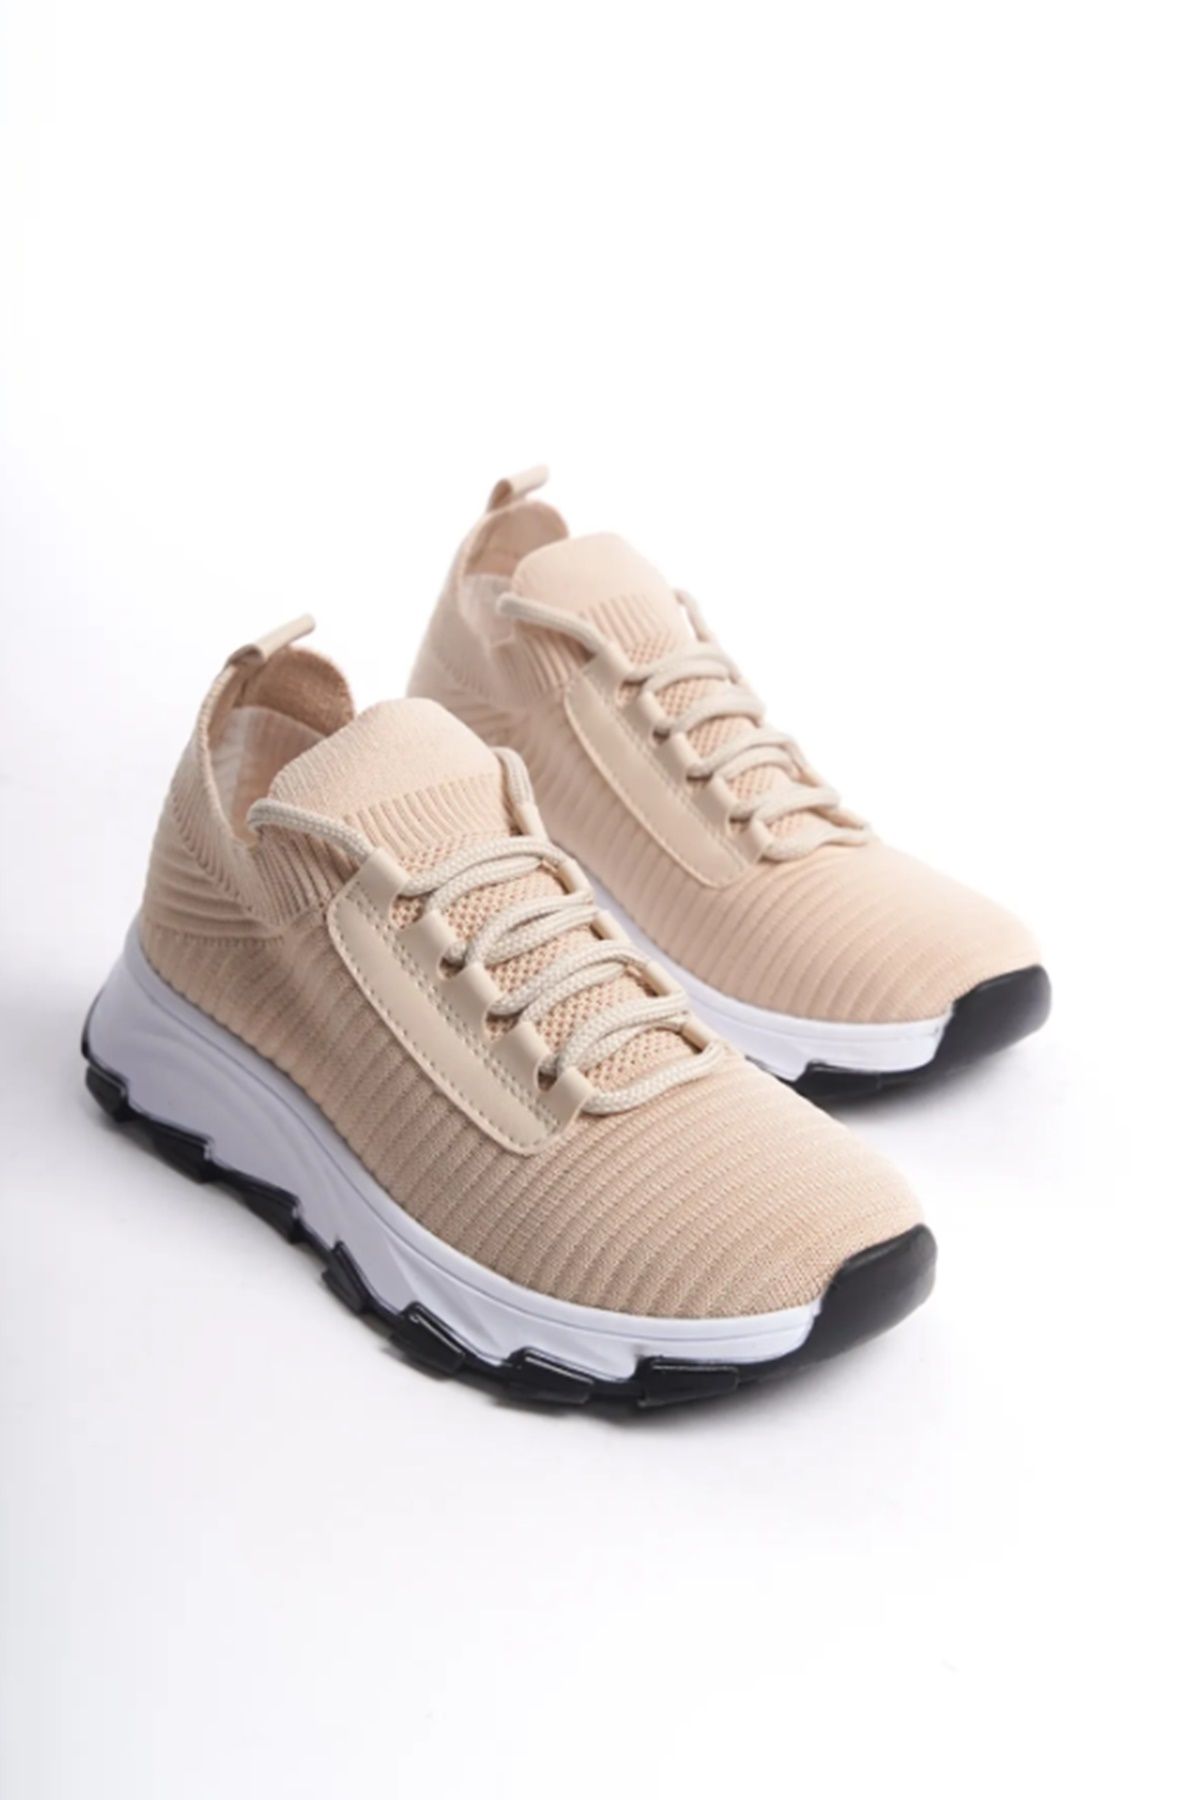 Grafen Kids Triko Garantili Bağcıklı Günlük Kadın Sneaker Yürüyüş Ayakkabısı